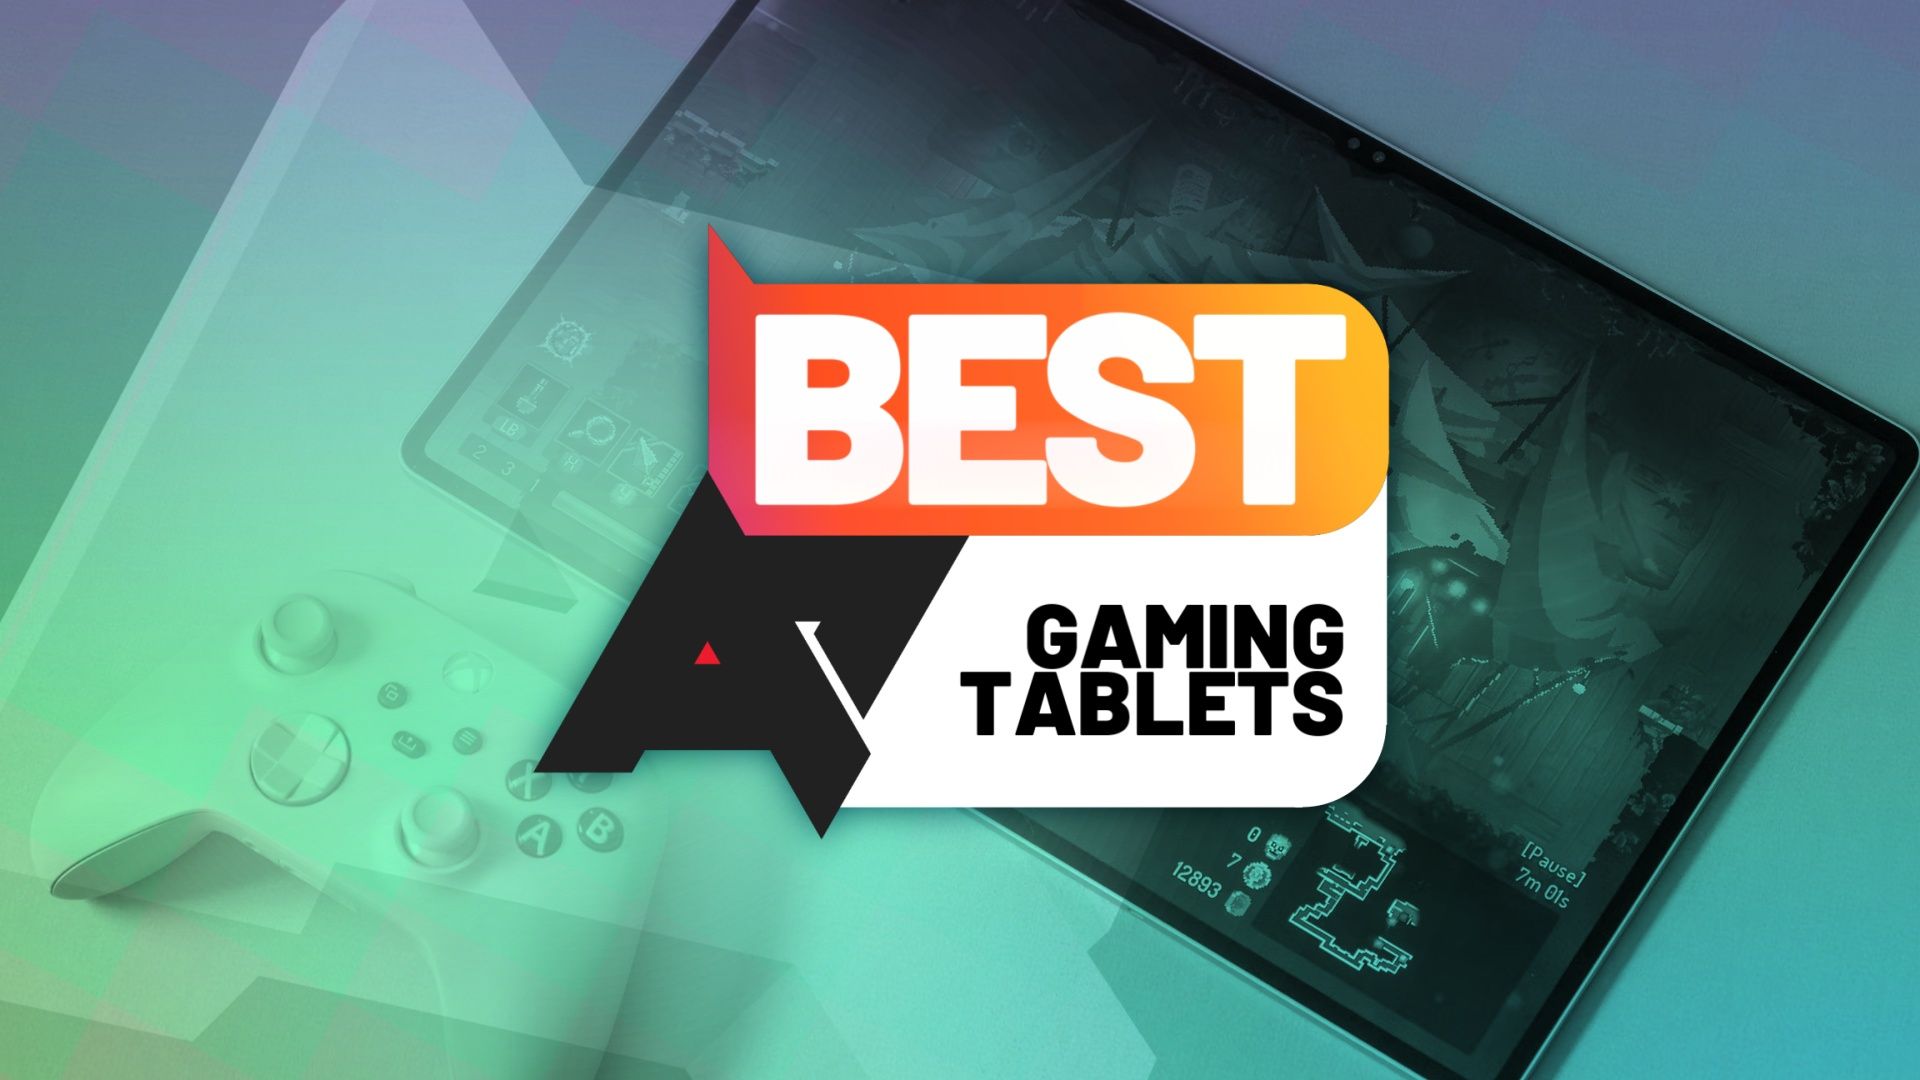 Uma foto de um tablet rodando um jogo com um controle Xbox próximo a ele e um logotipo da AP Best Gaming Tablets